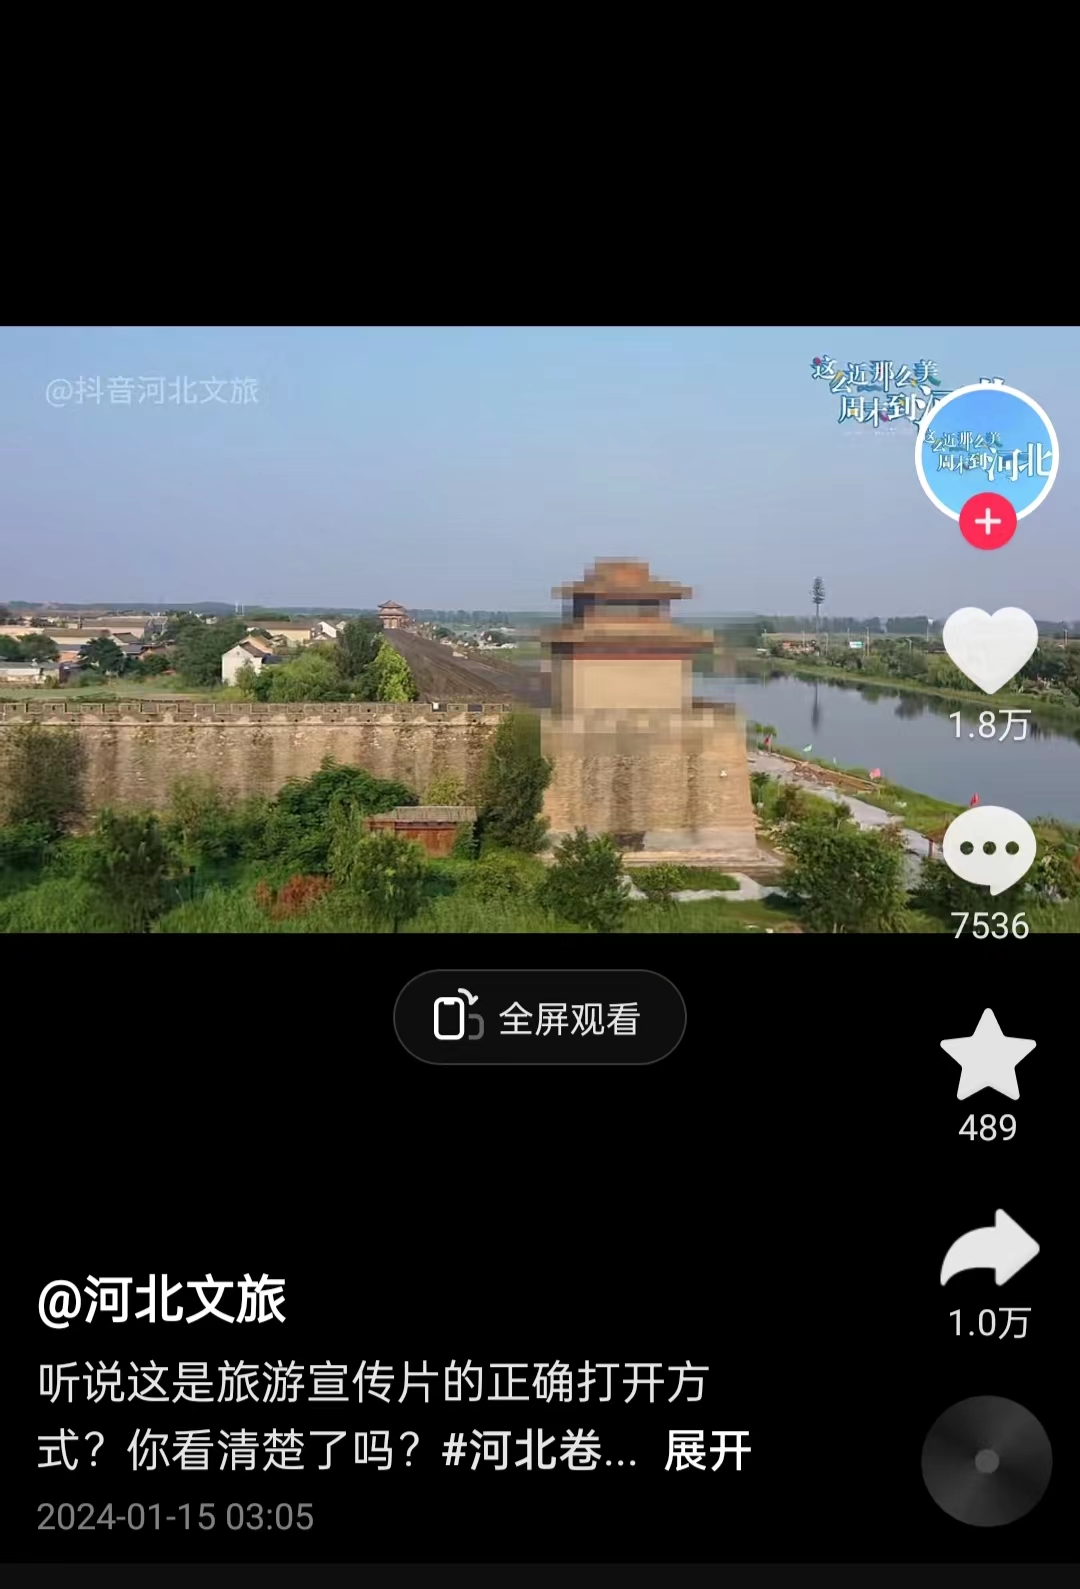 河北文旅根據網友建議發布的“打碼版”旅游宣傳片。 截圖自“河北文旅”官方短視頻賬號。